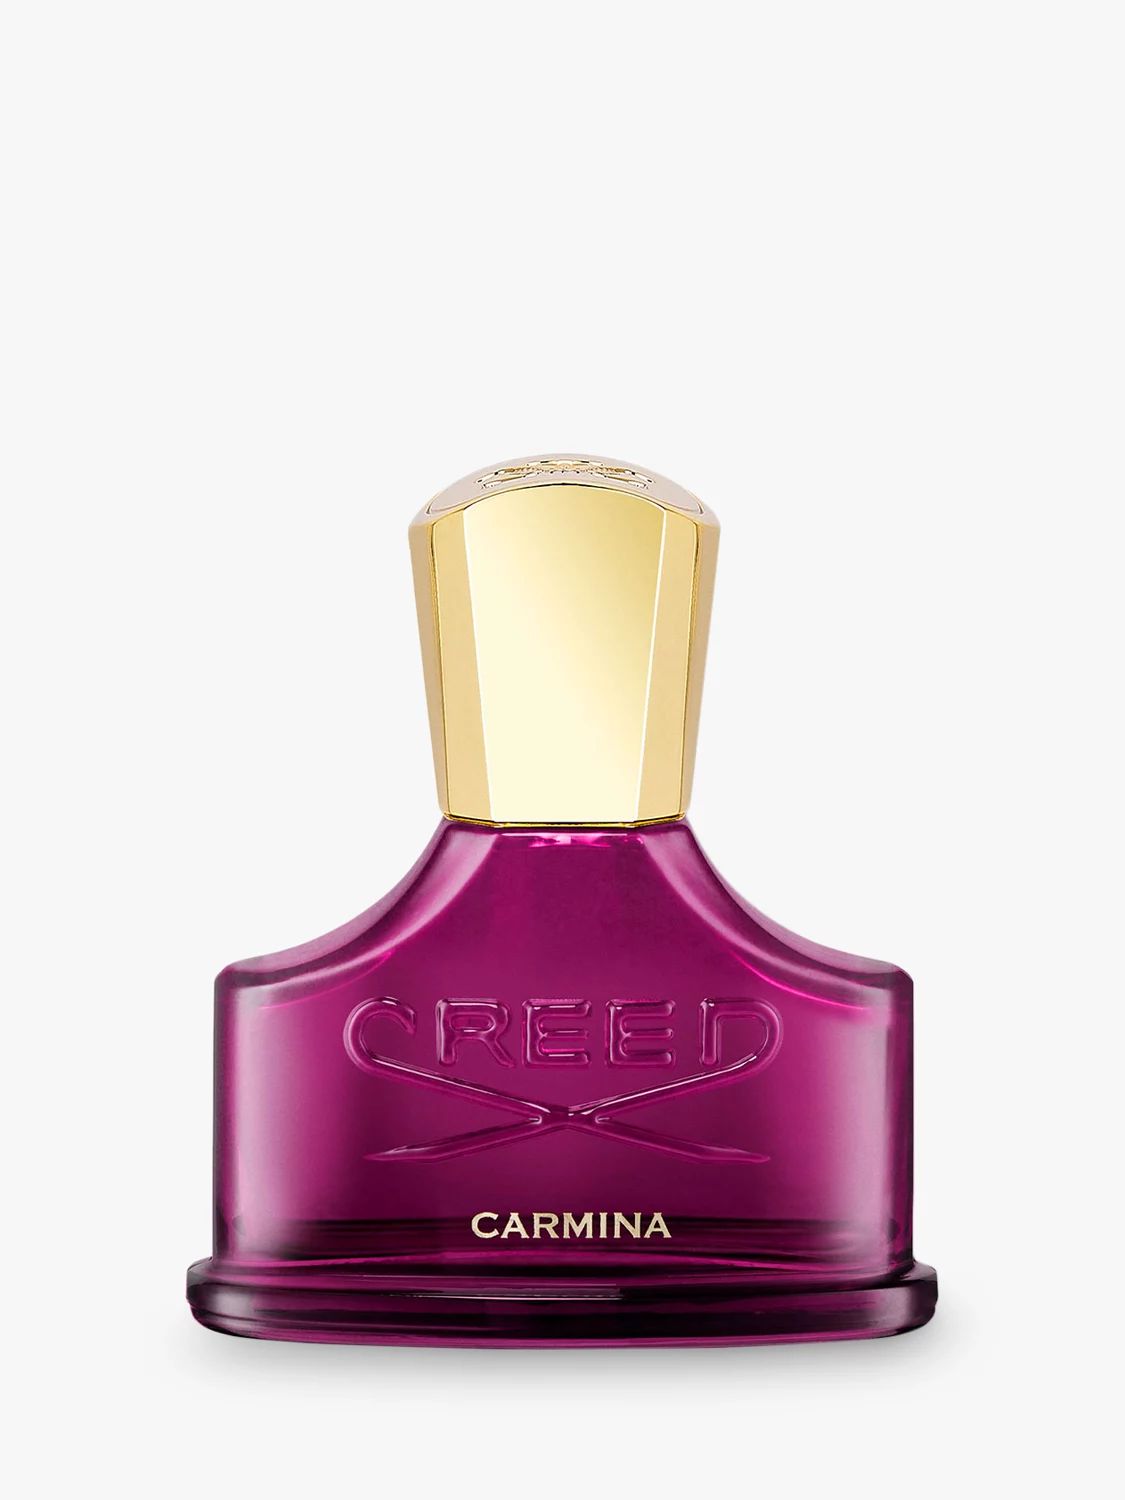 CREED Carmina Eau de Parfum, 30ml | John Lewis (UK)